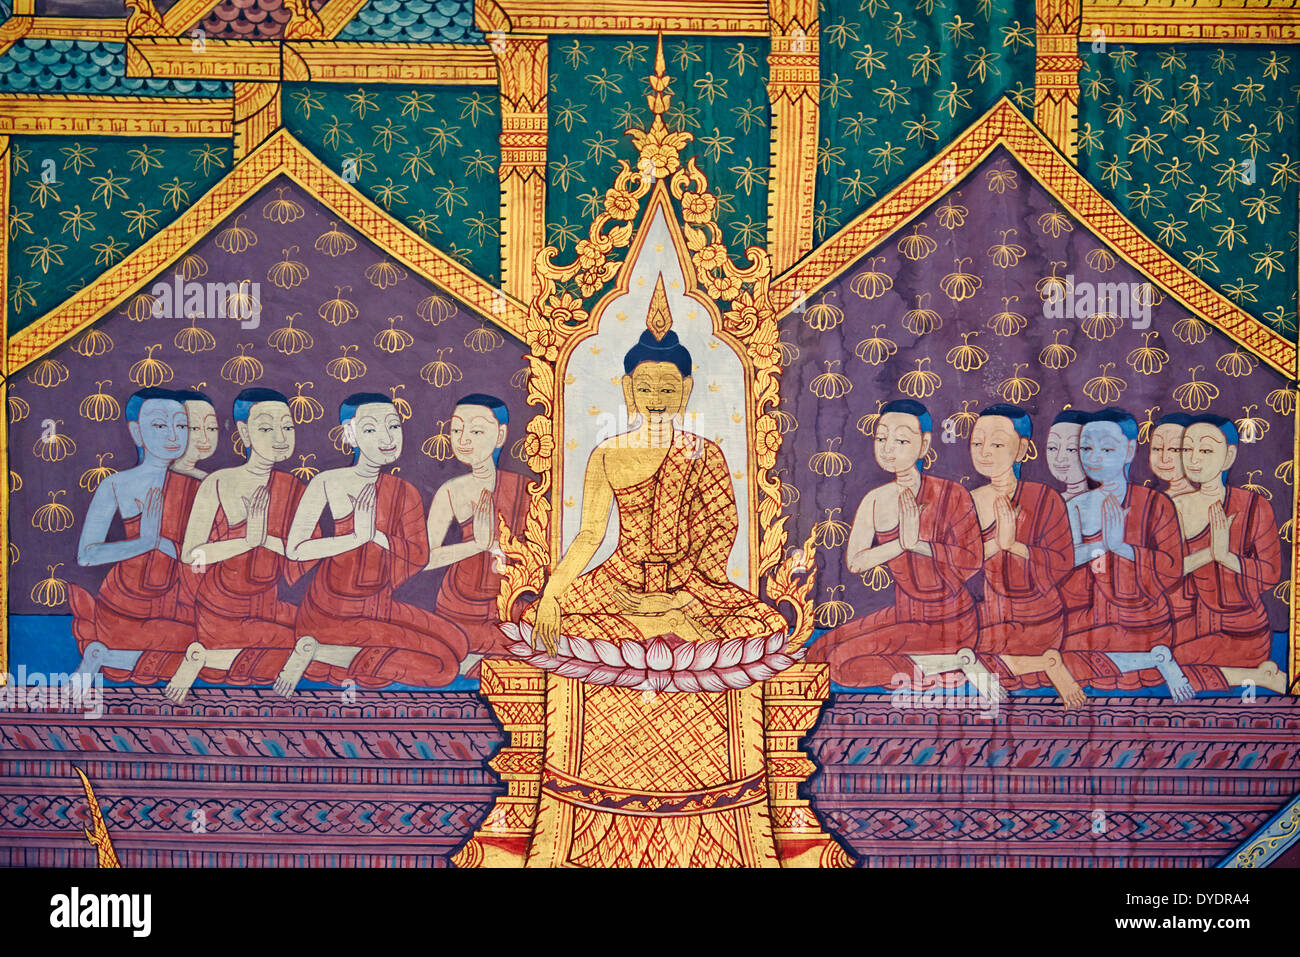 Thaïlande, Bangkok, Wat Pho, temple du Bouddha de couchage, peinture murale Banque D'Images